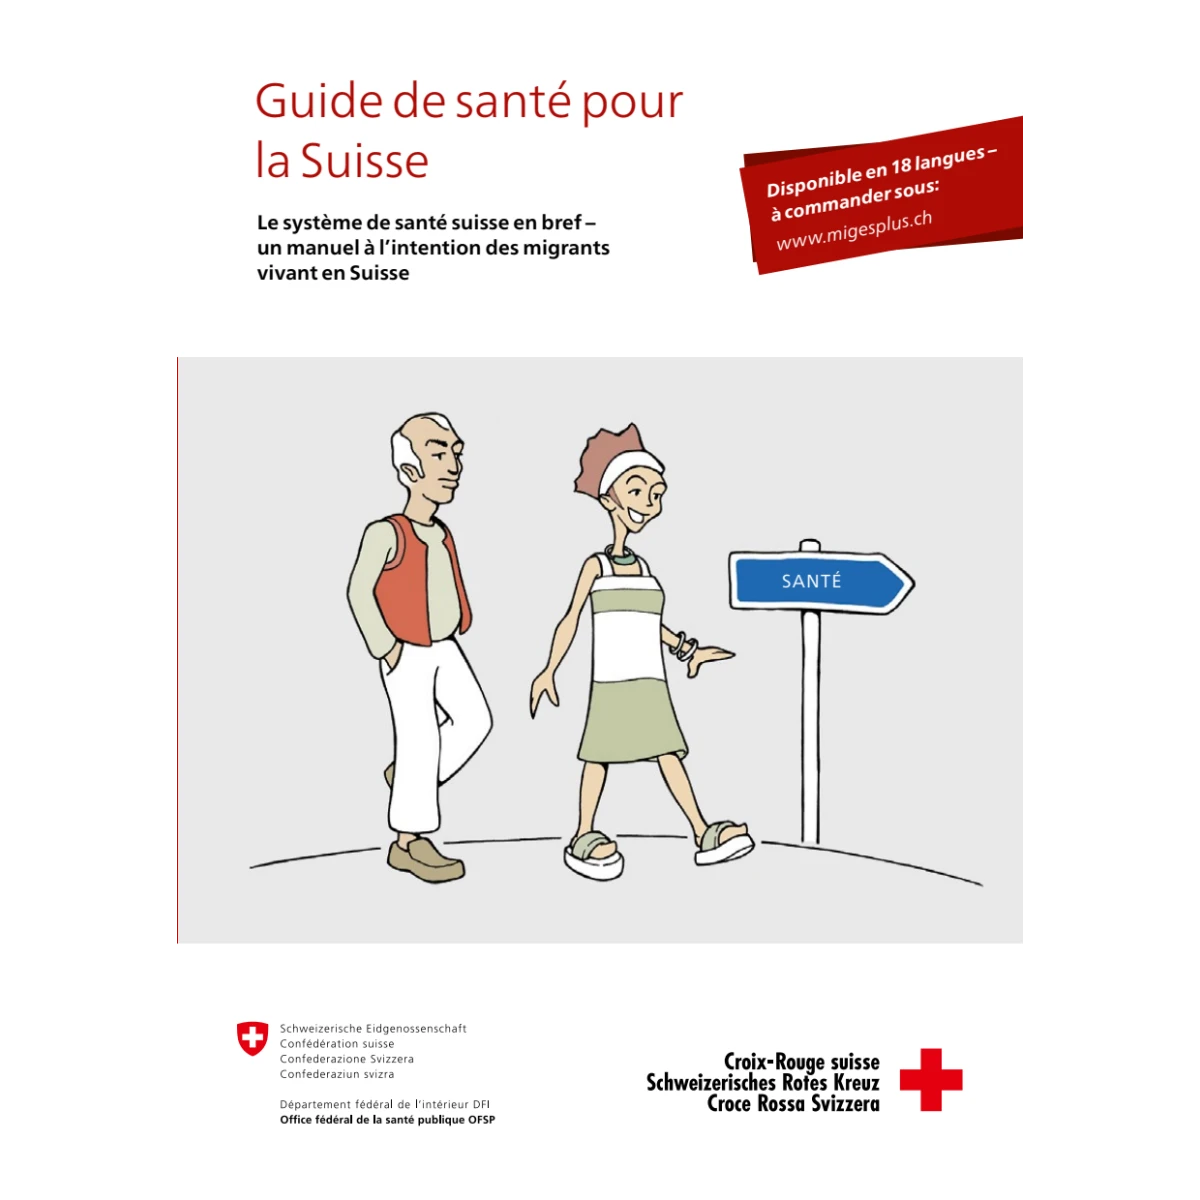 Guide de santé pour la Suisse